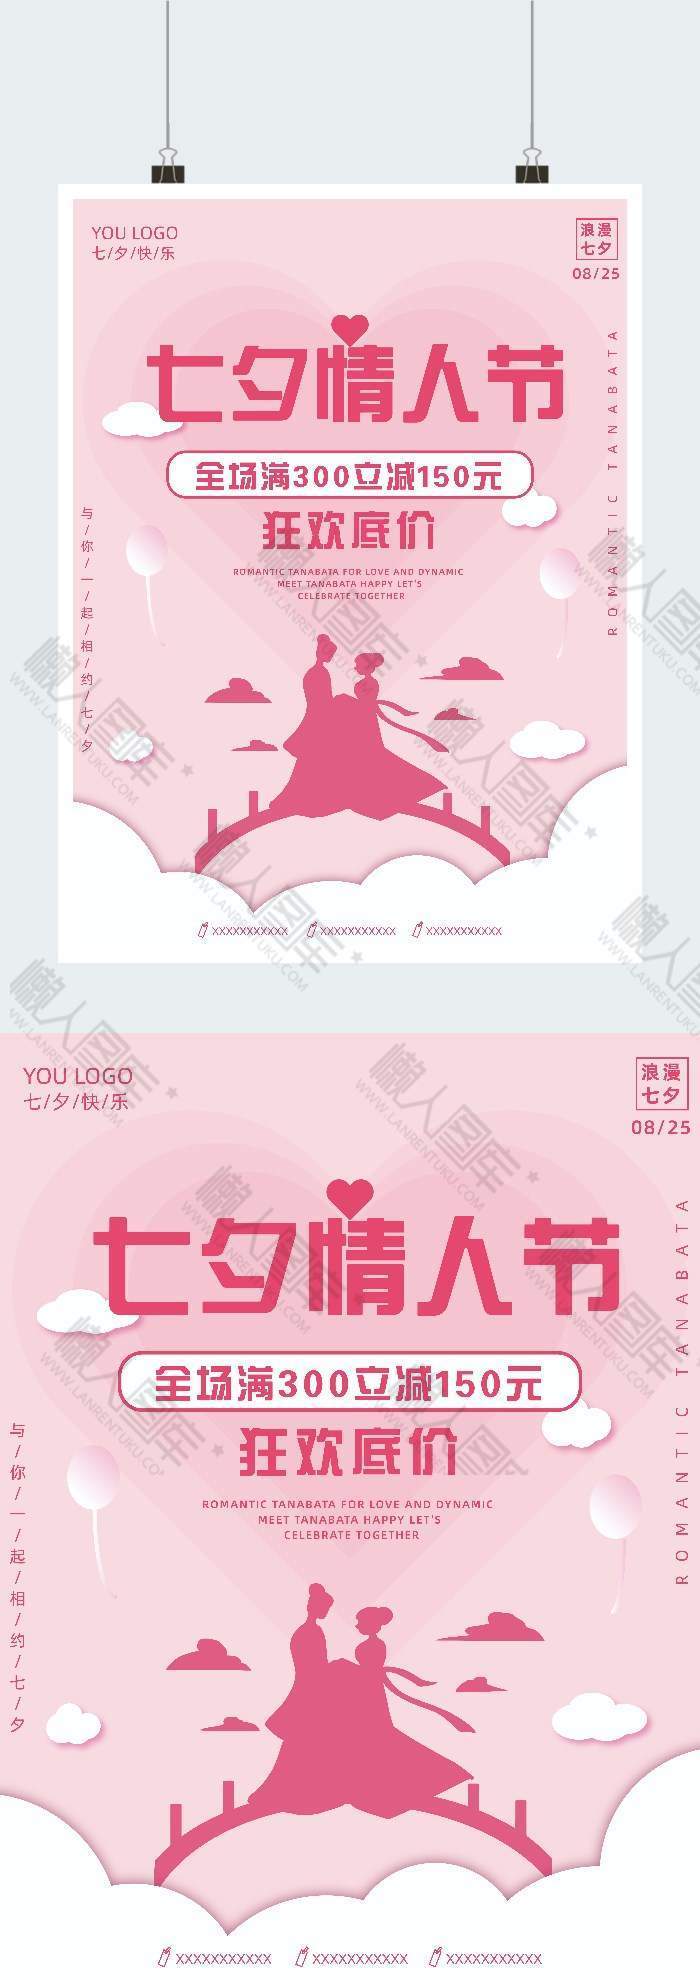 七夕情人节印刷物料竖版海报